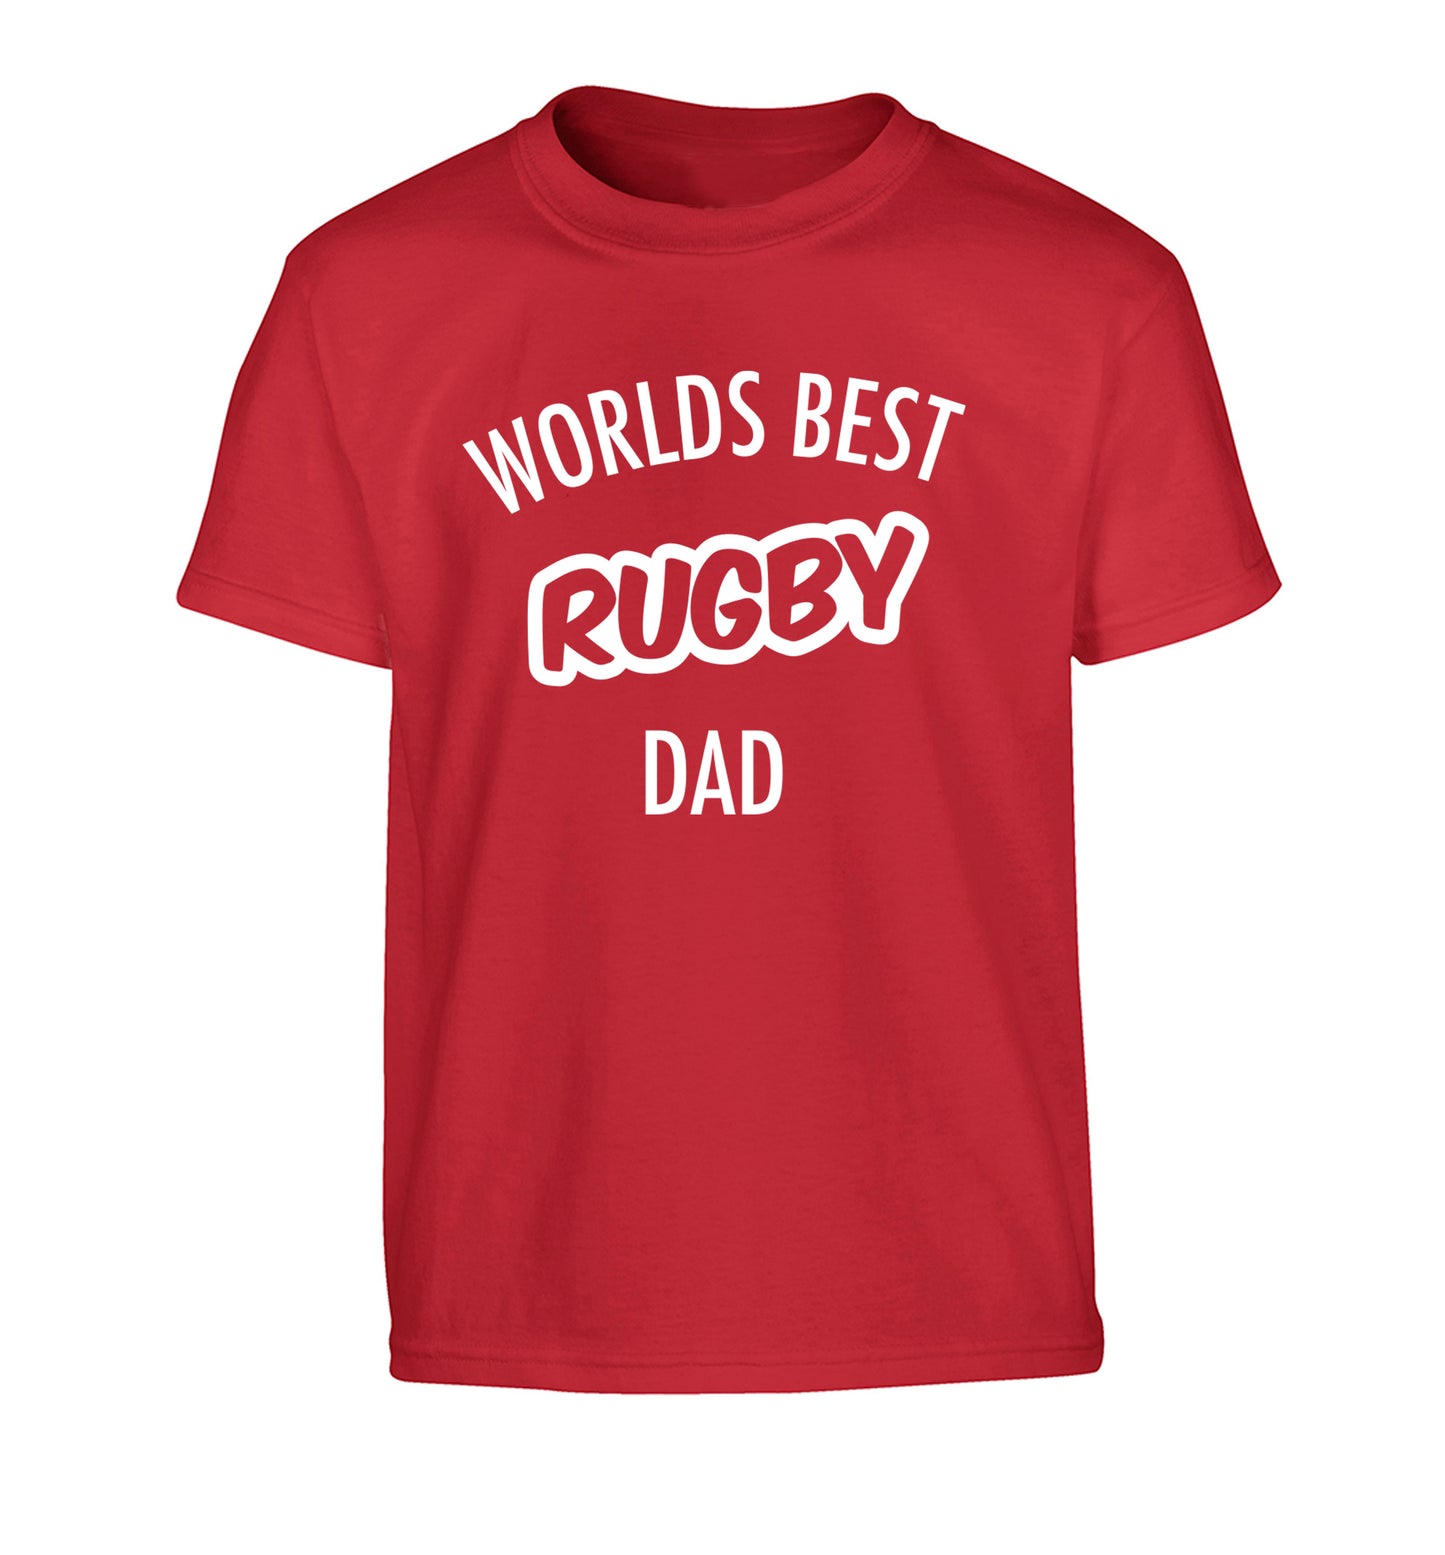 Worlds best rugby dad Children's red Tshirt 12-13 Years